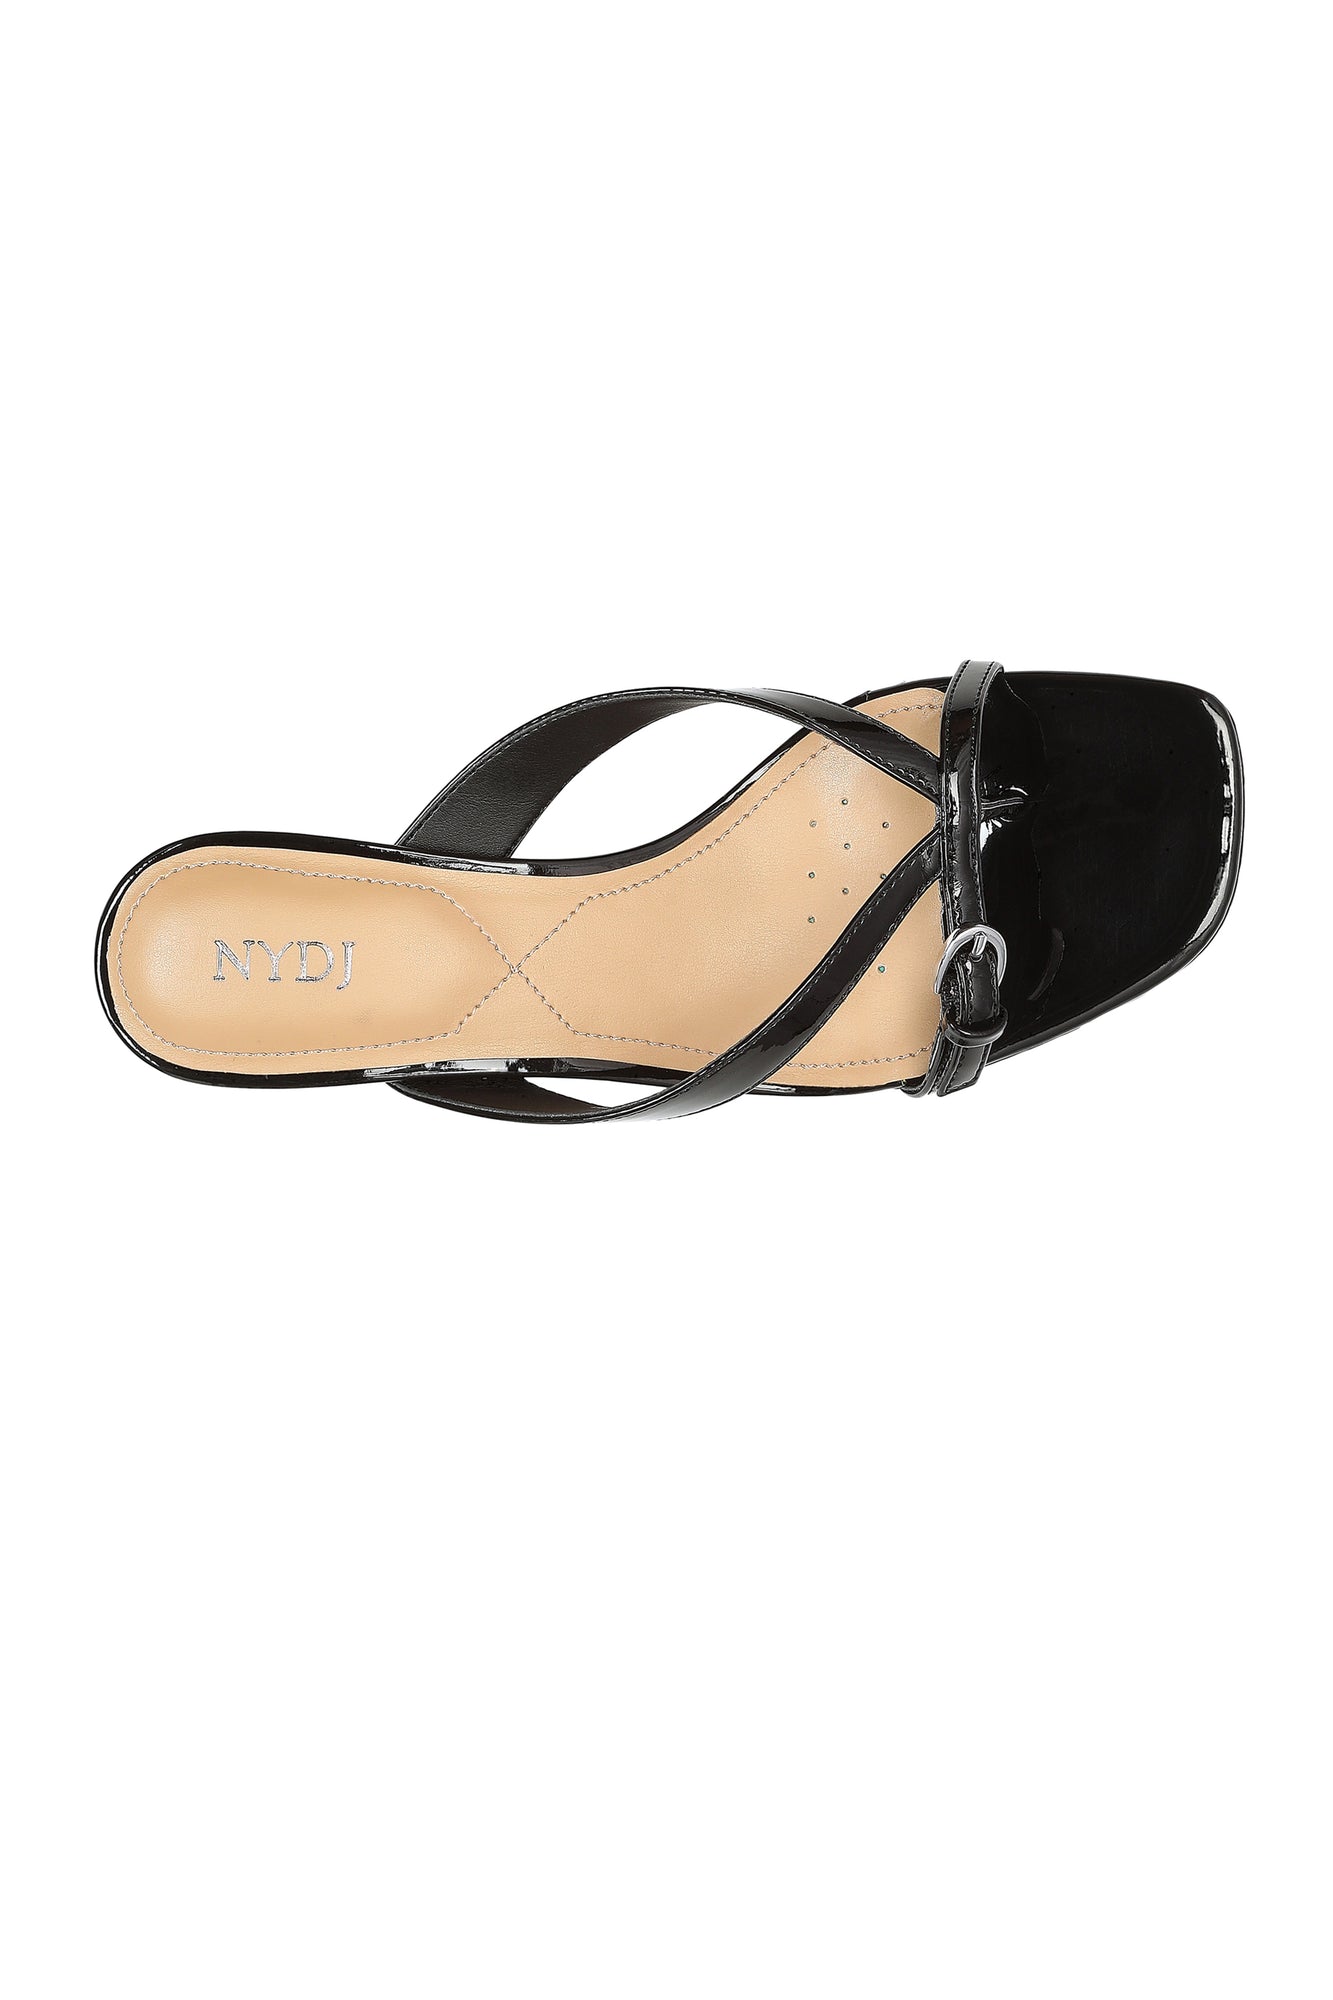 NYDJ Glam Block Heel Sandals In Patent - Black